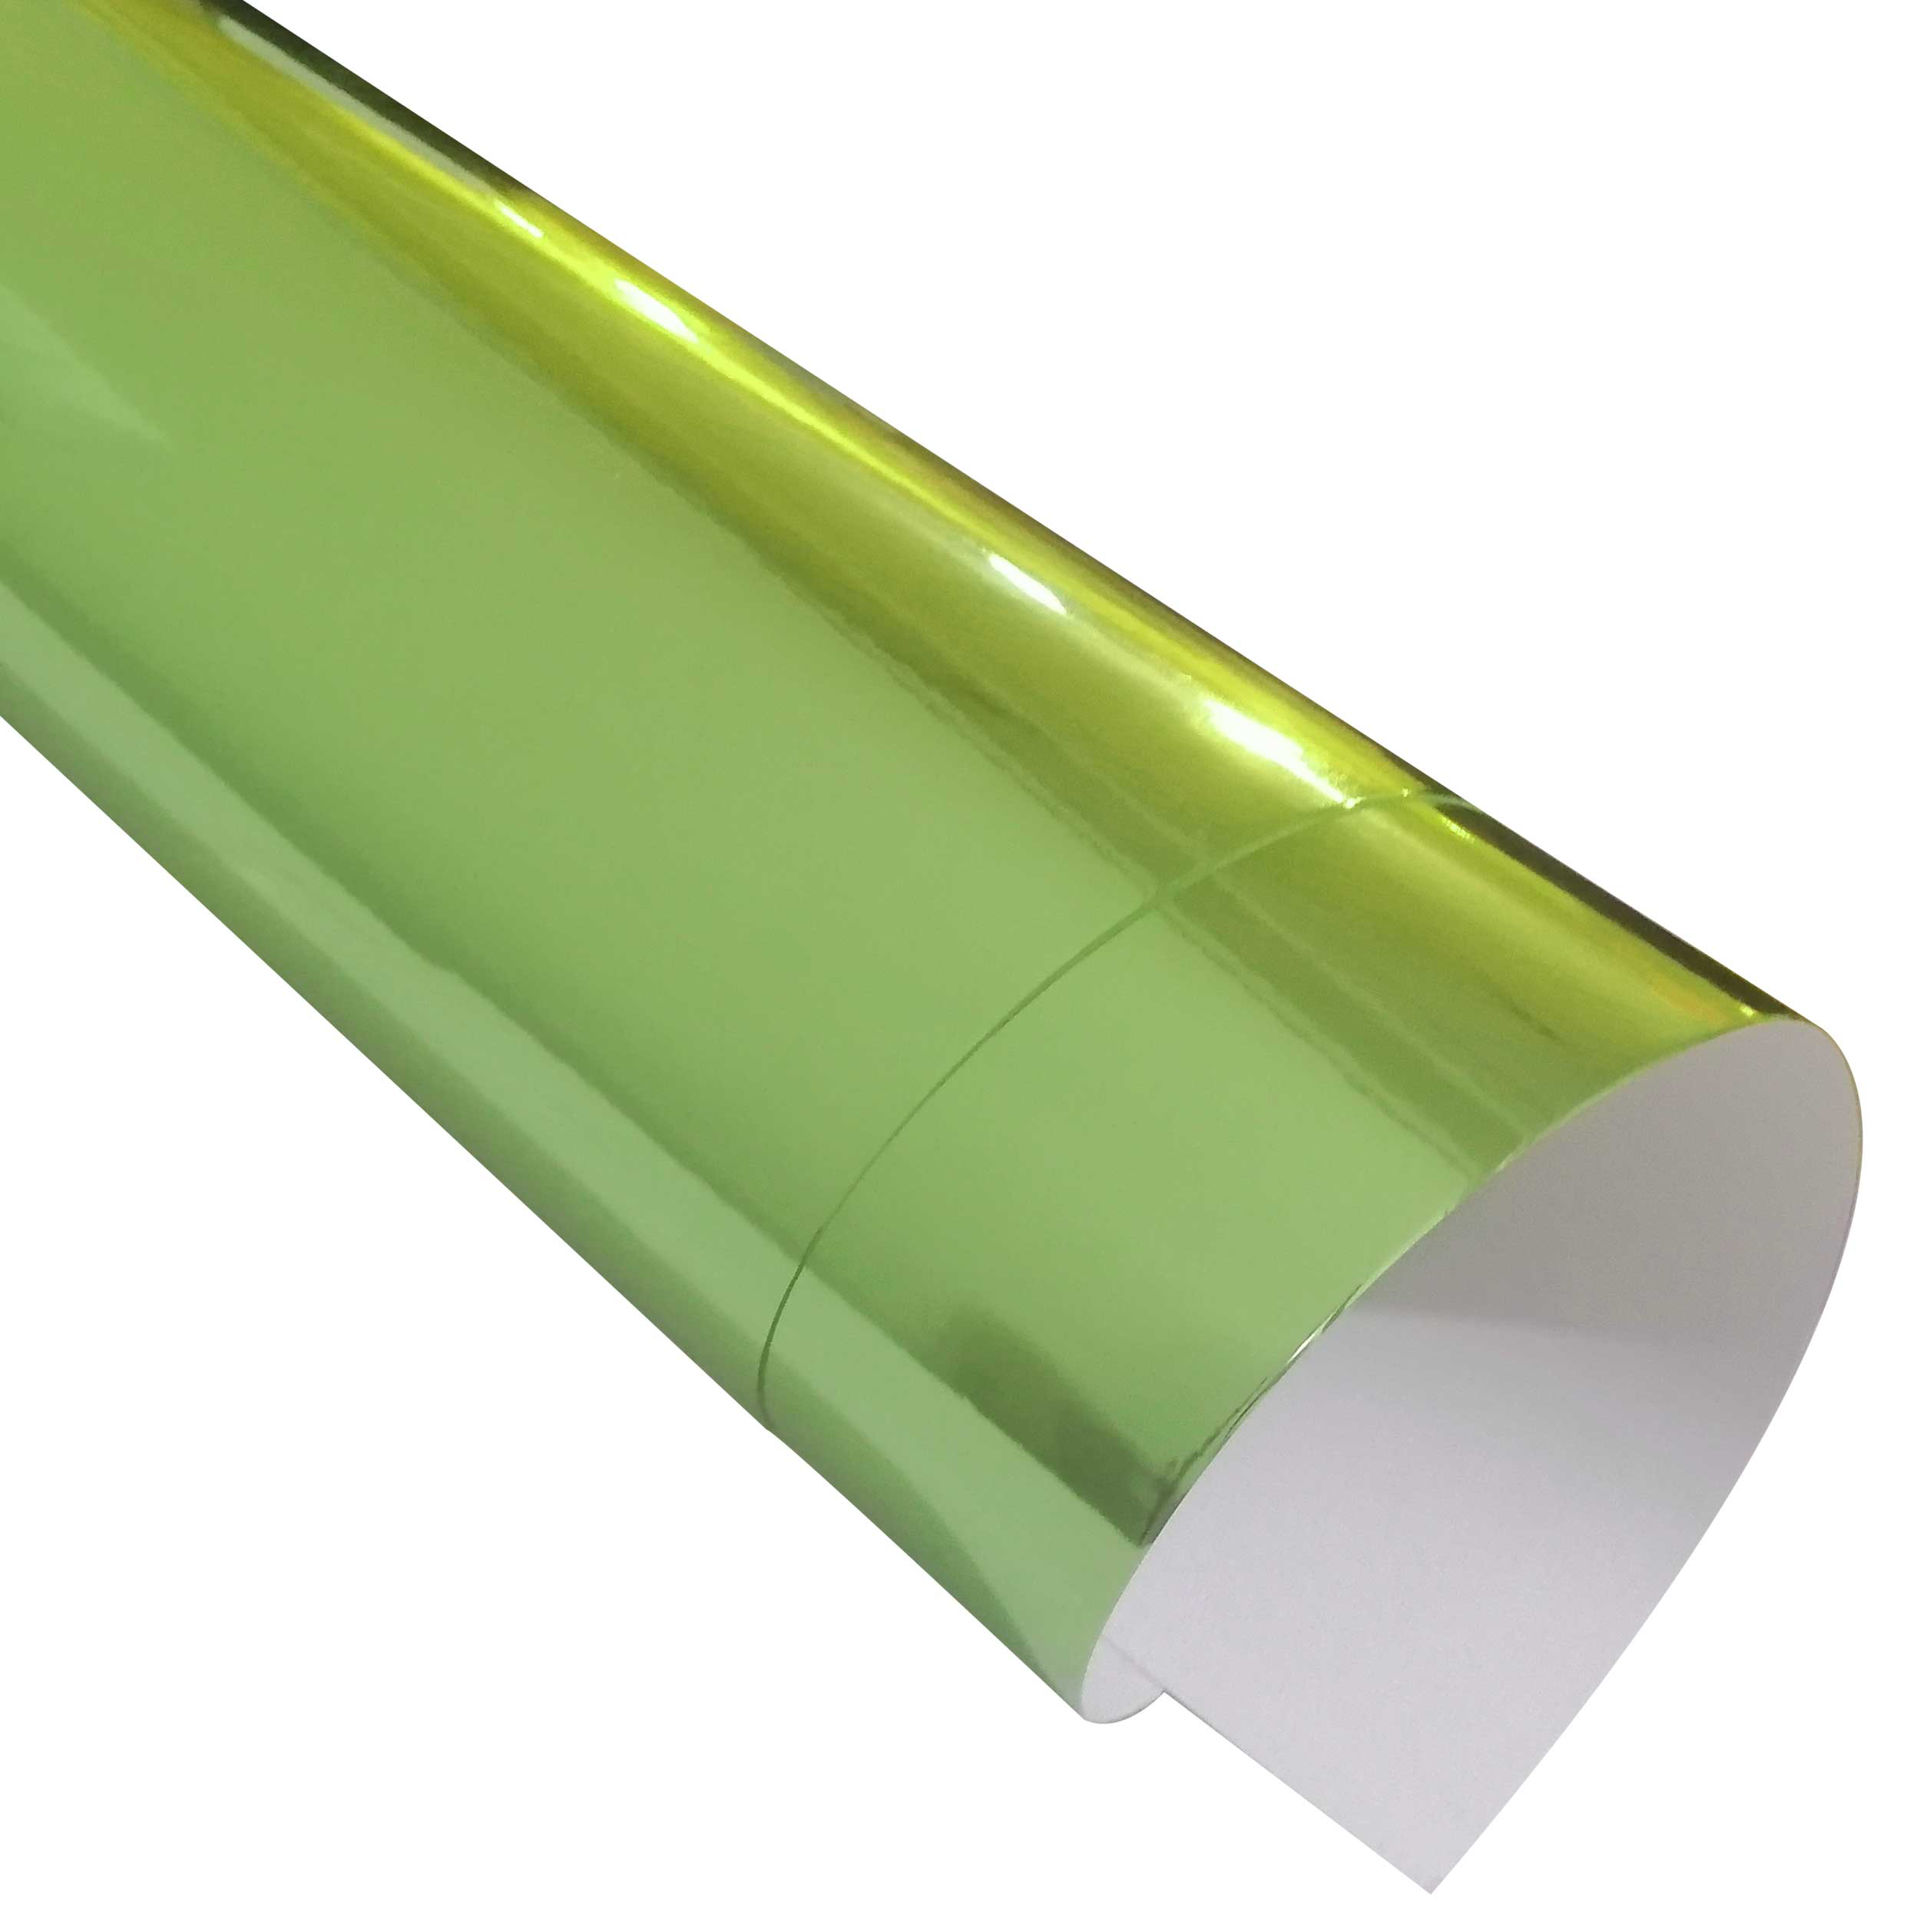 مقوا متالایز سبز آینه ای در ابعاد و بسته بندی متنوع